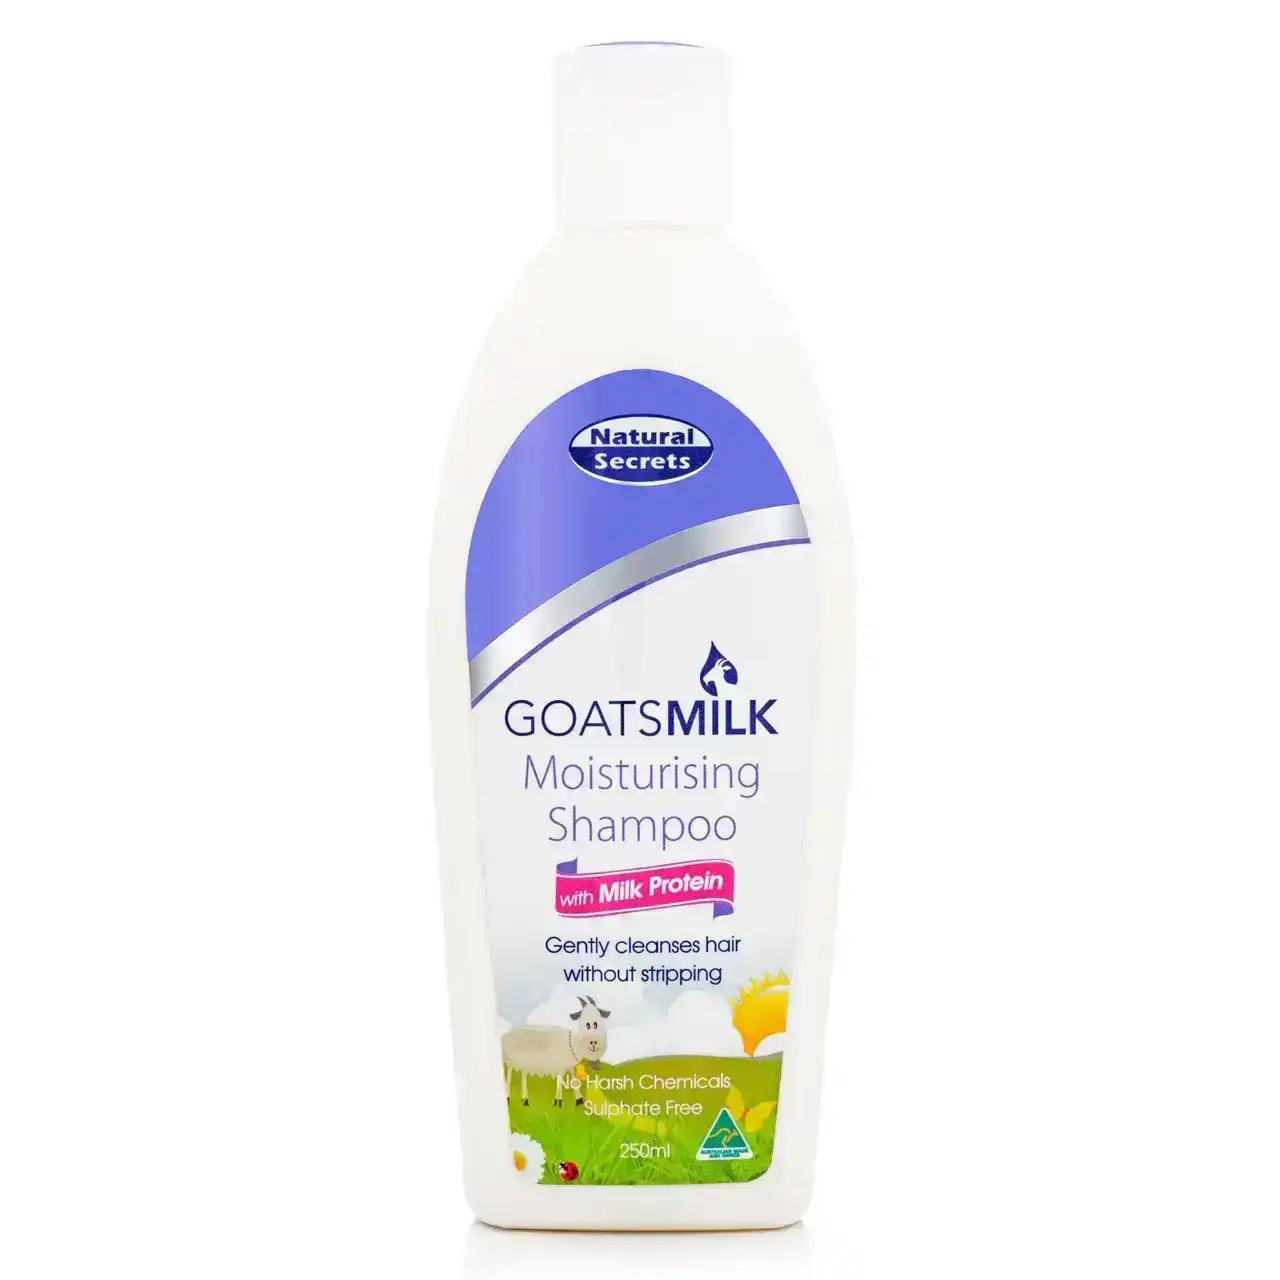 Natural Secrets Goatsmilk Moisturising Shampoo With Milk Protein 250ml